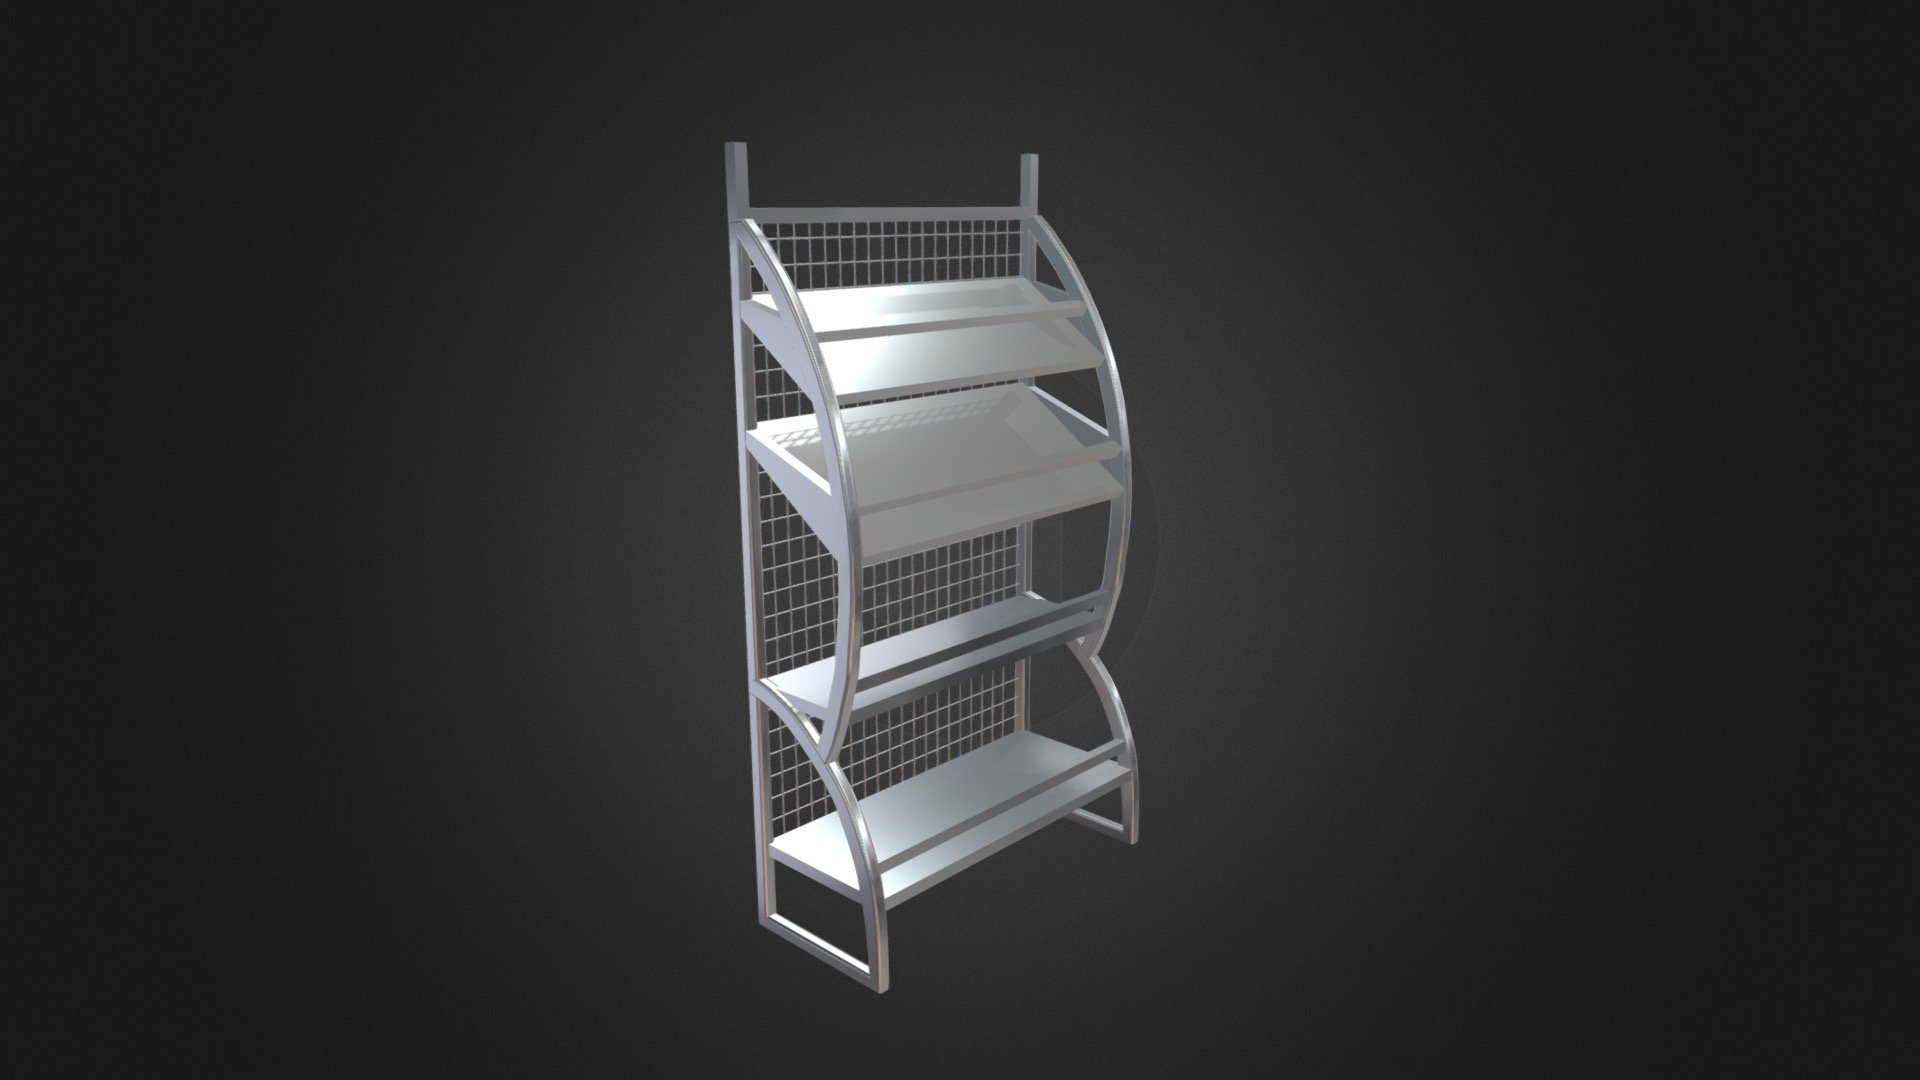 Goods-shelves - 3D model by llllline 3d model